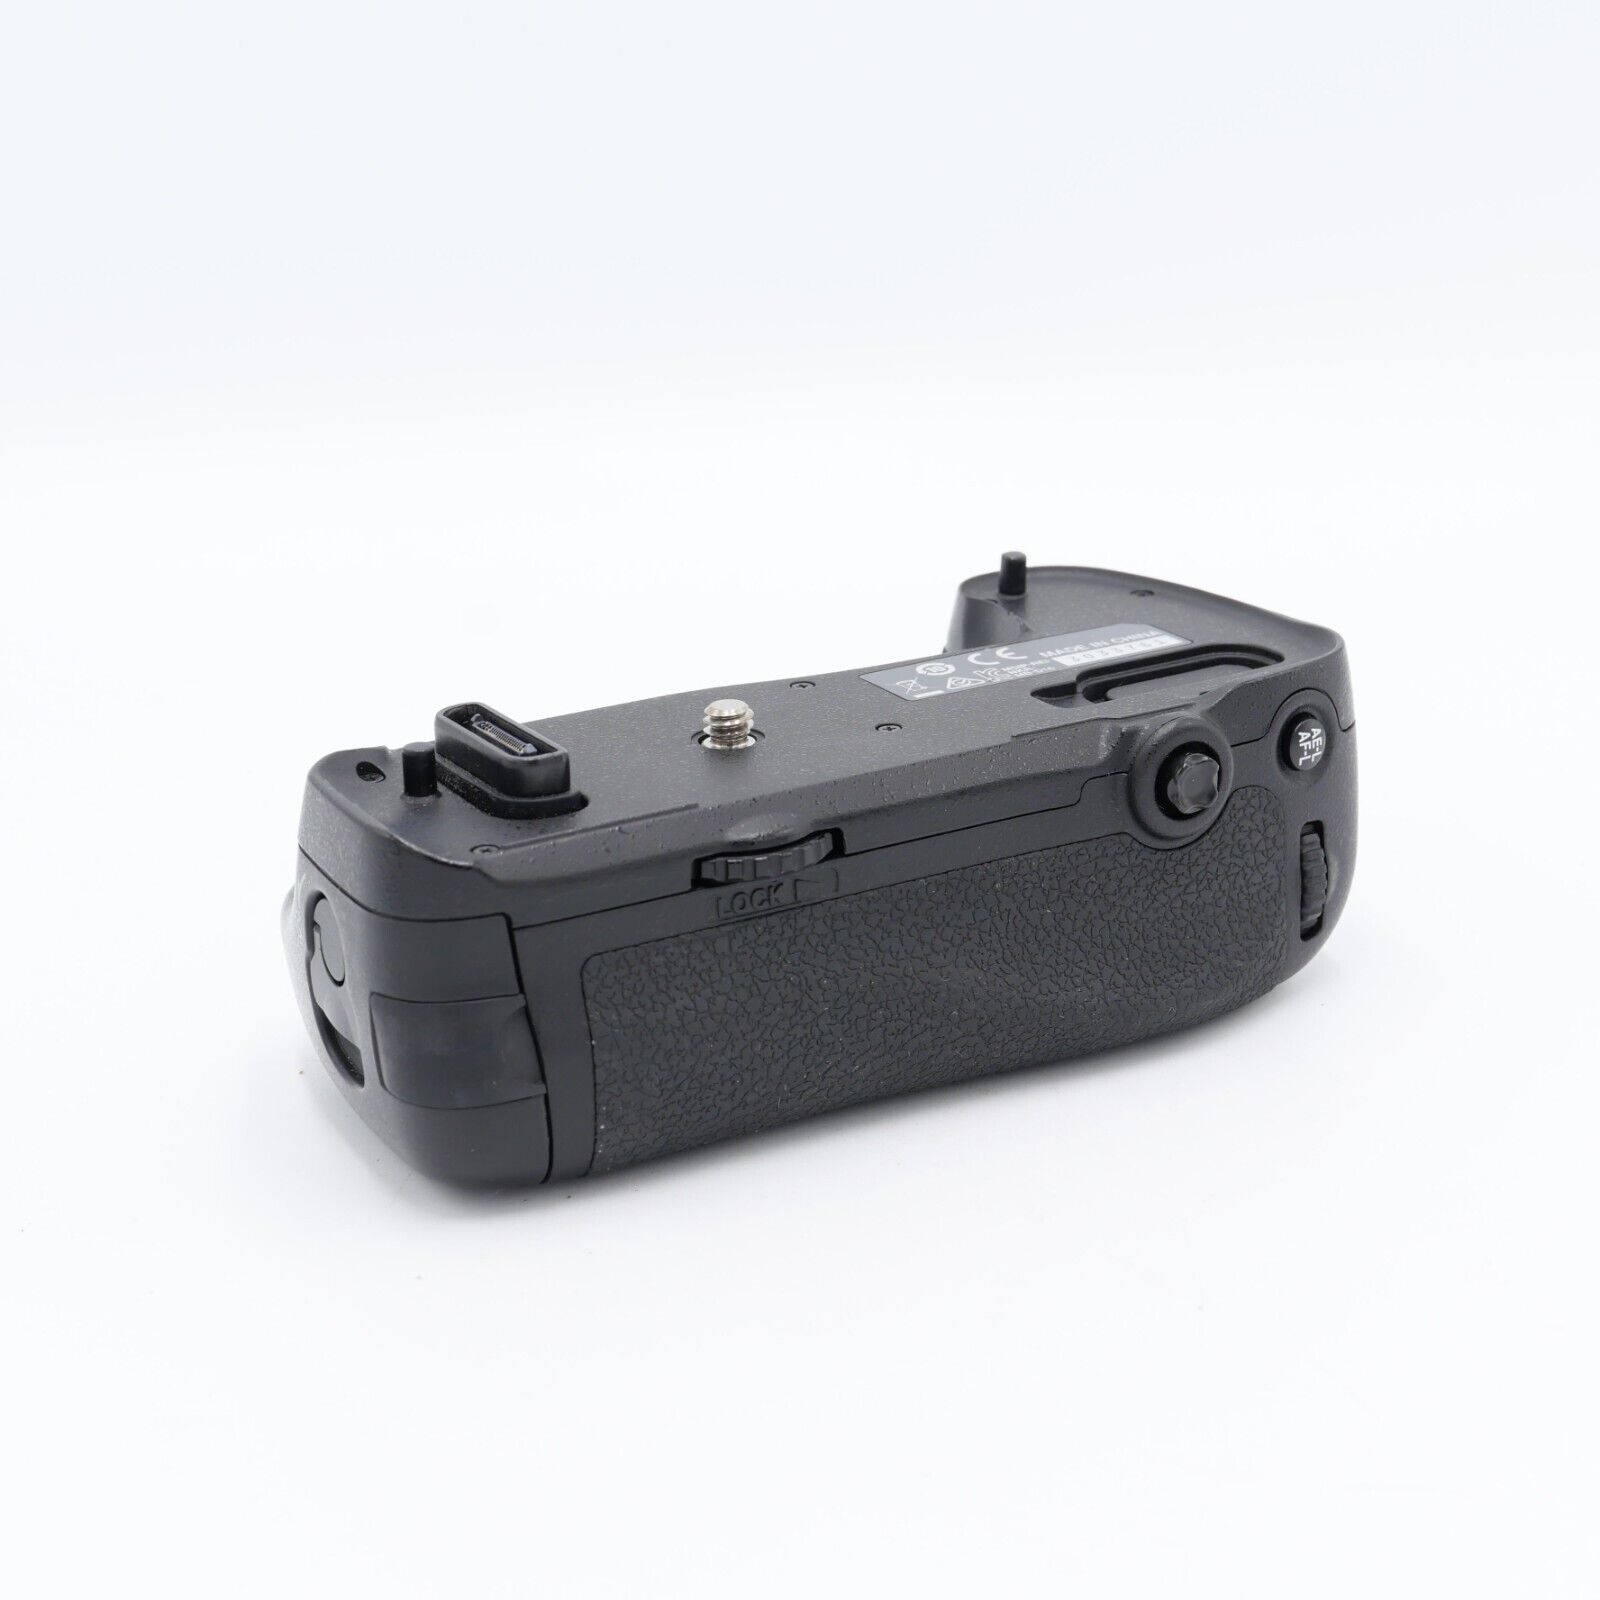 Nikon MB-D16 Multi Battery Power Pack for sale online | eBay